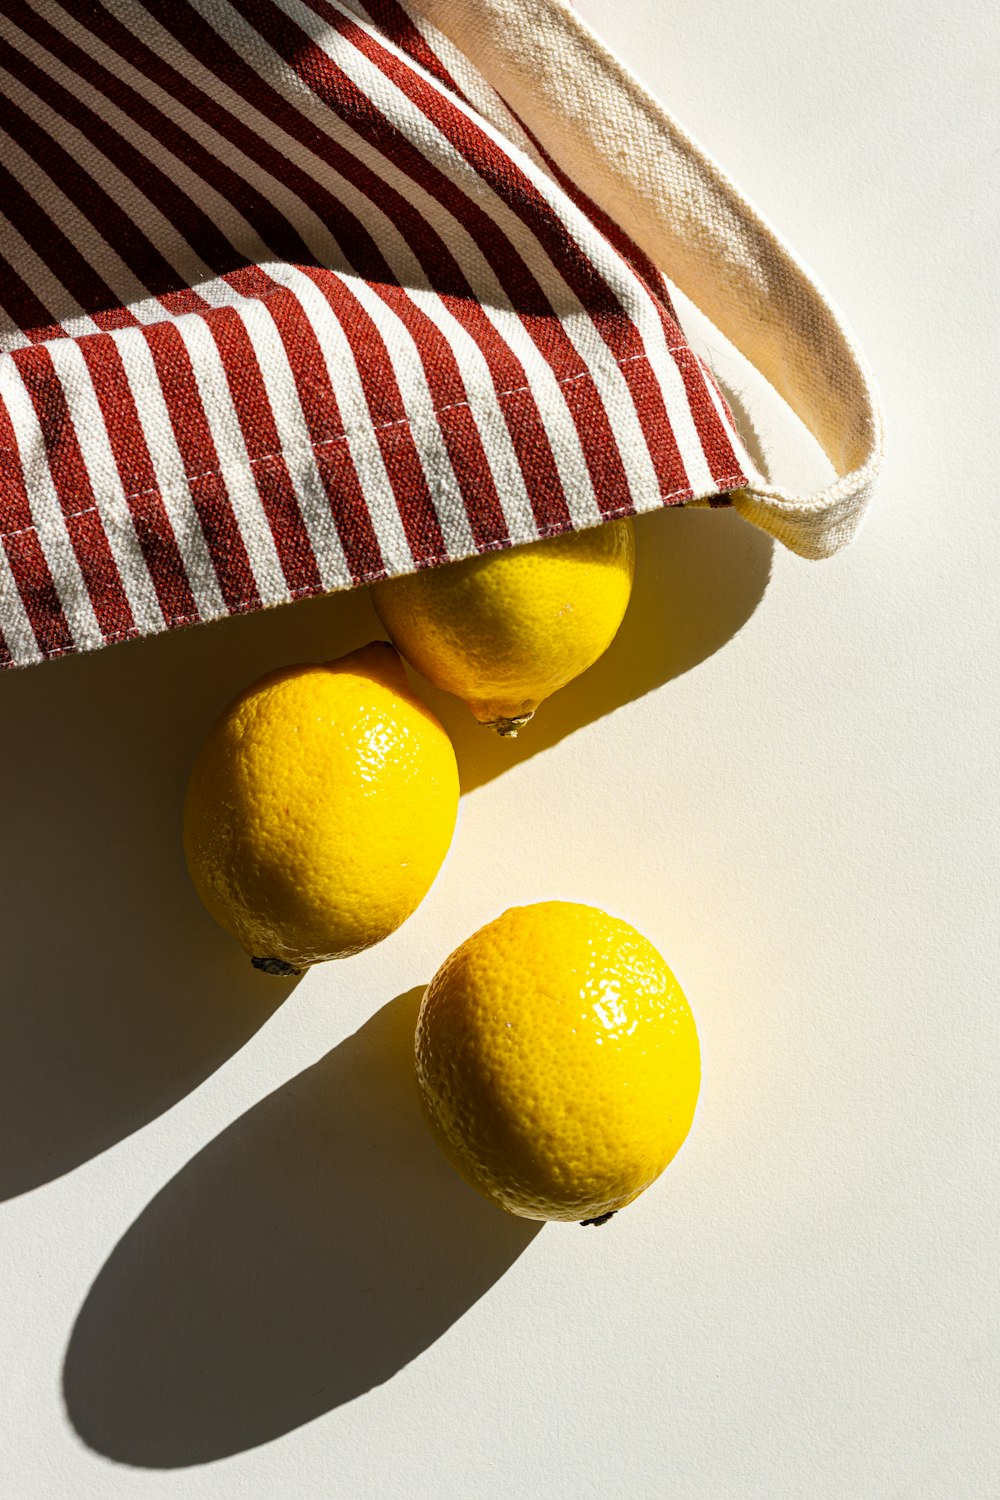 tre limoni in un sacchetto a righe bianche e rosse